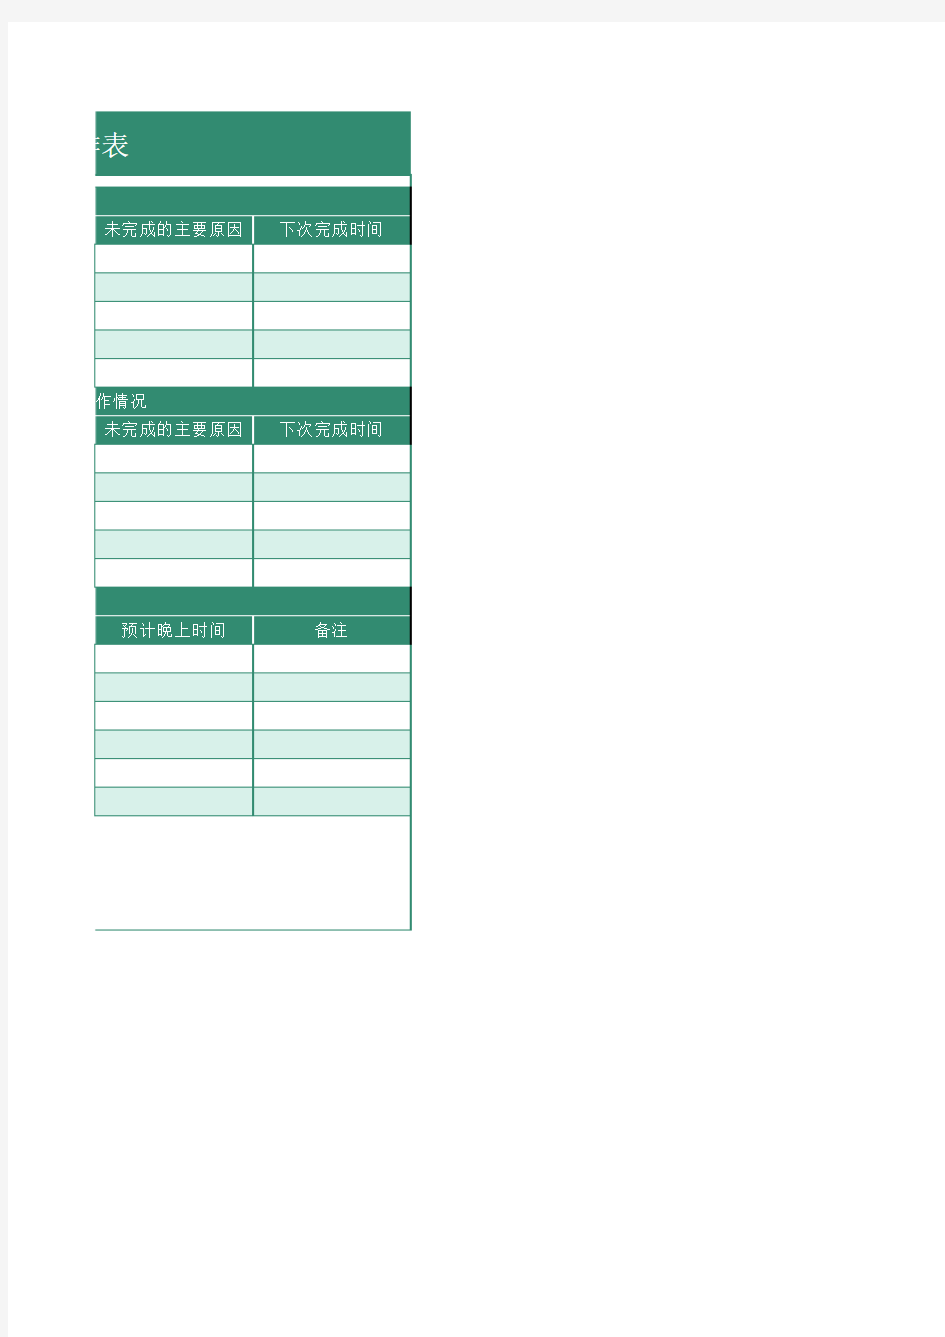 周工作计划安排表Excel模板